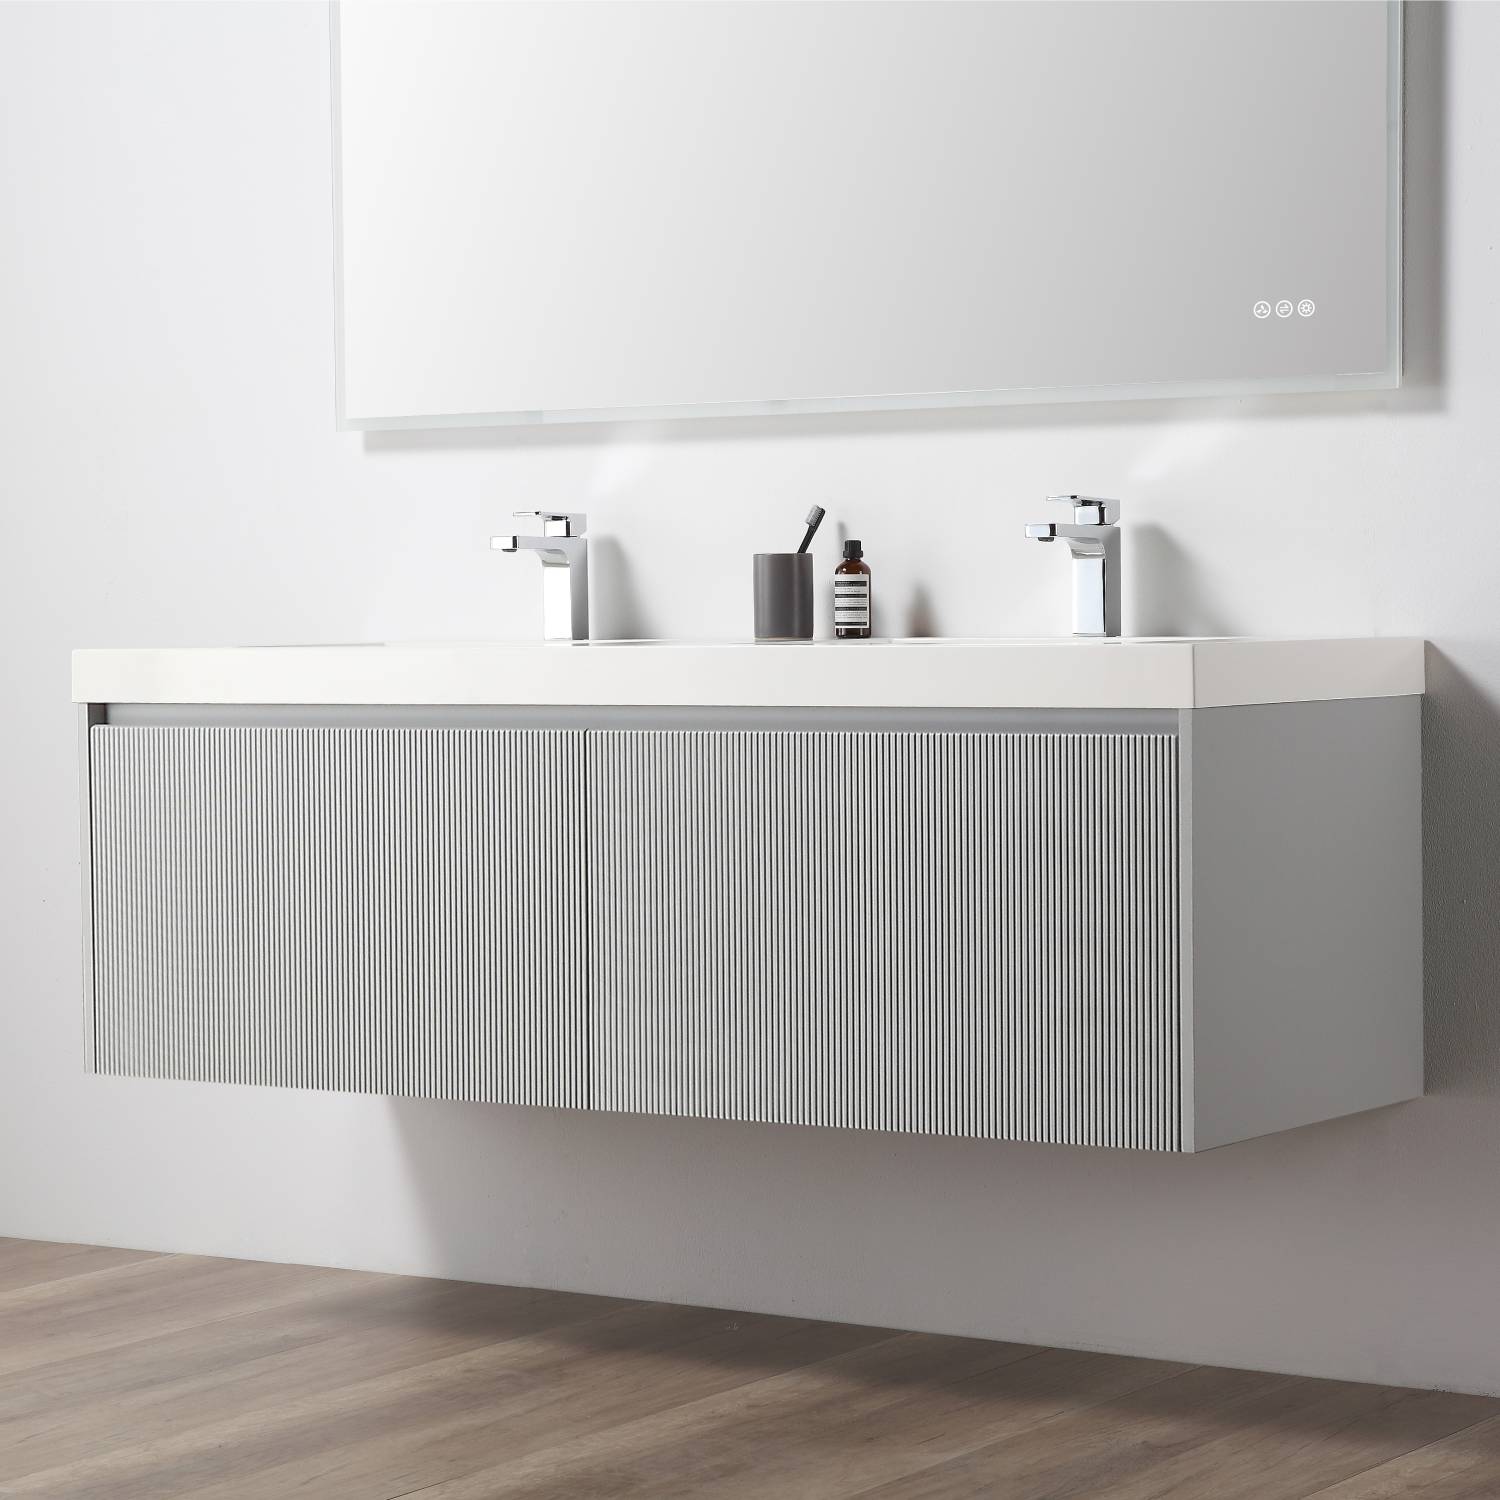 Positano 60" Bathroom Vanity  #size_60"  #color_light grey